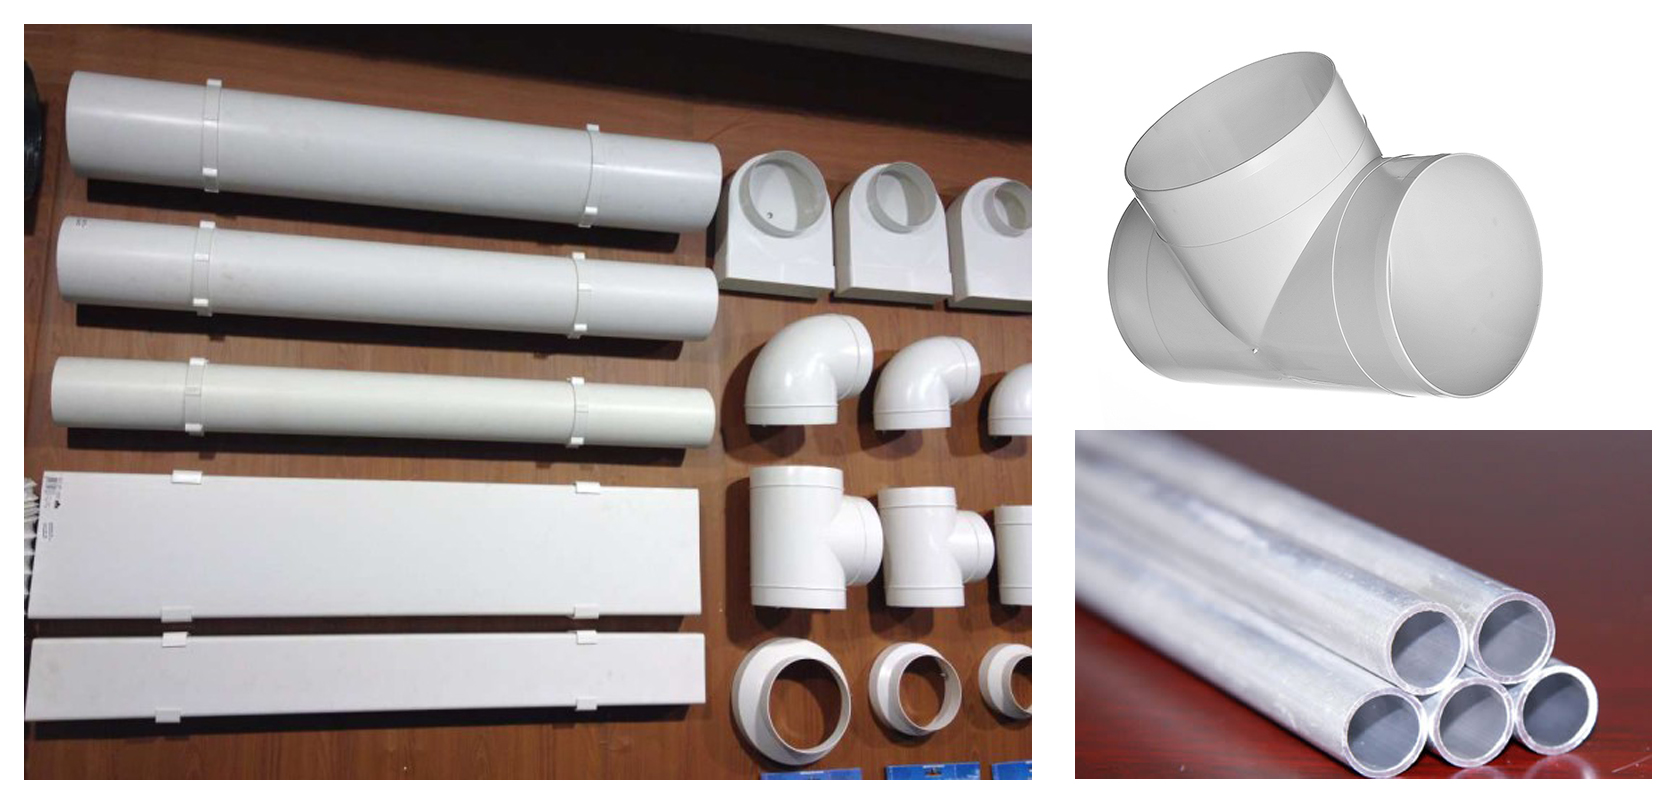 Пластиковые вентиляционные трубы, воздуховоды, прямоугольные каналы и их описание